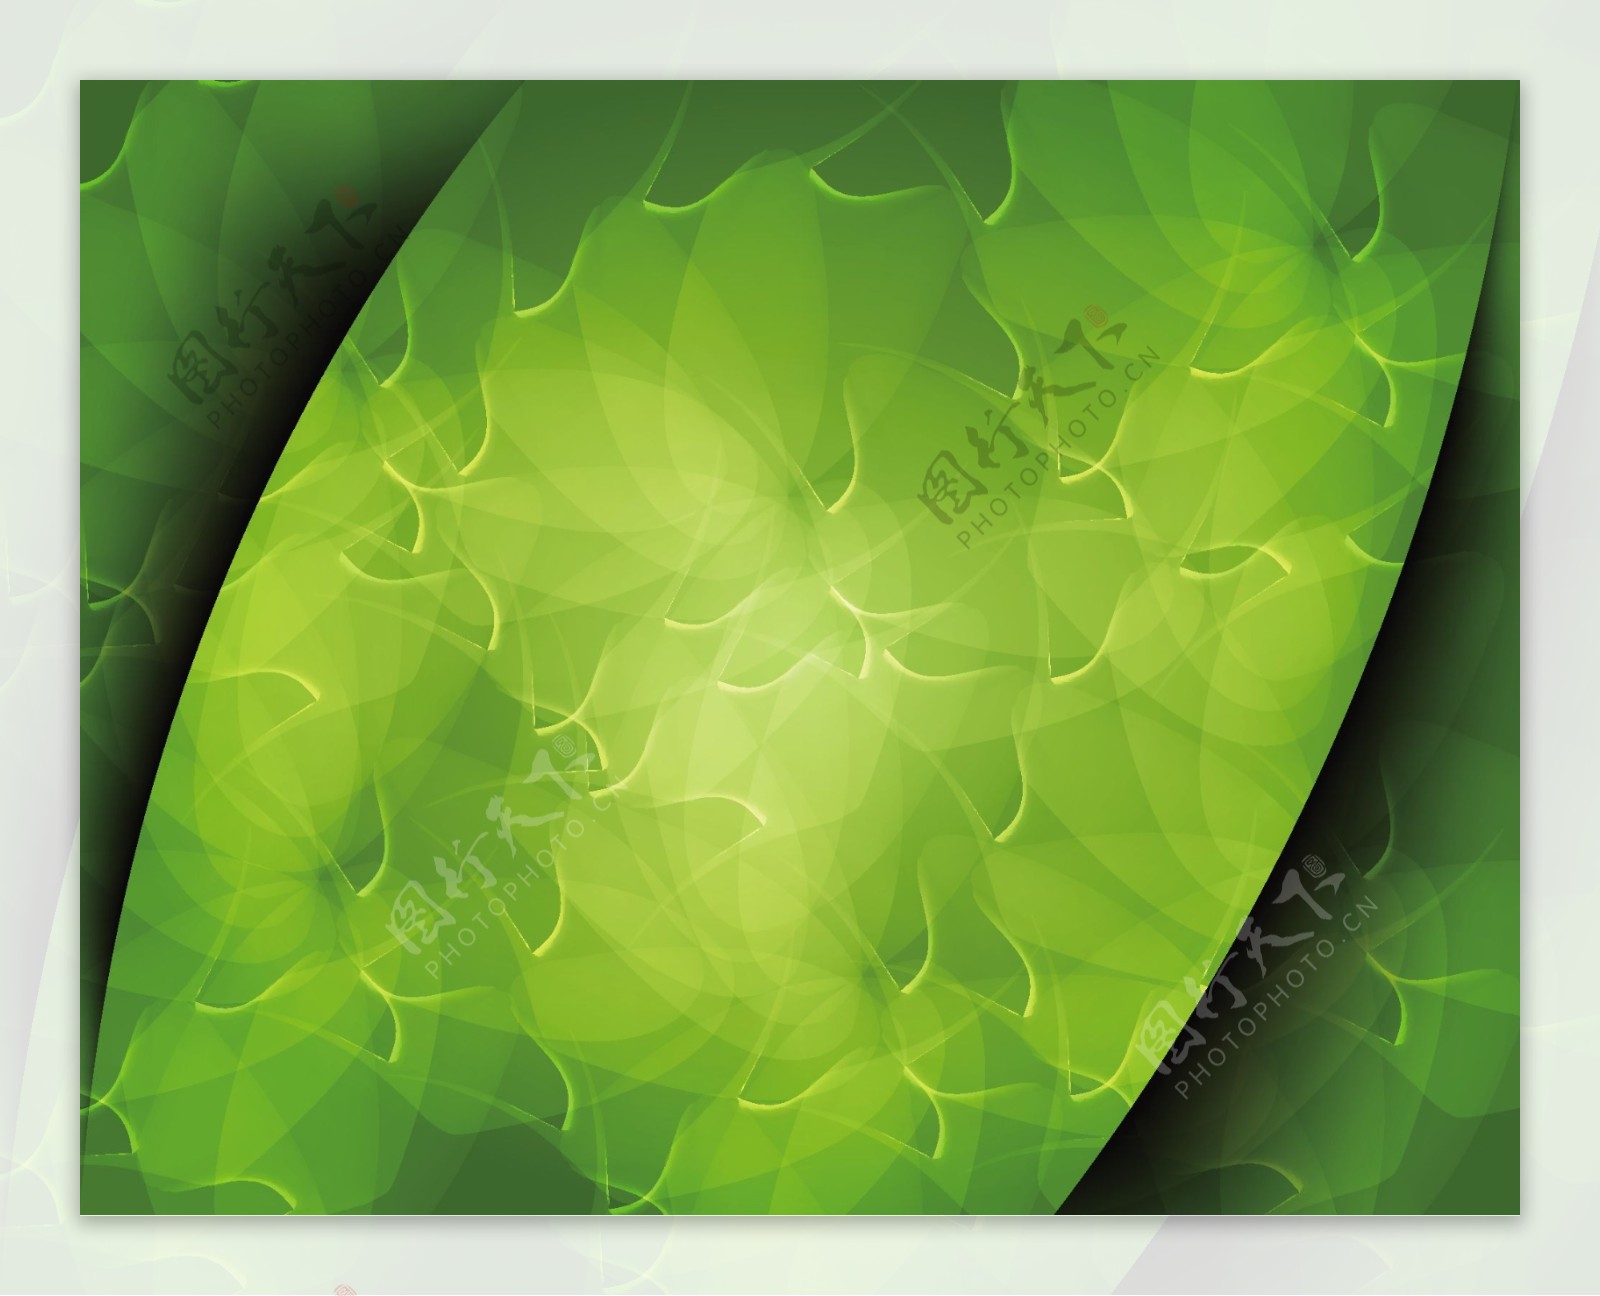 抽象的绿色艺术背景矢量插图